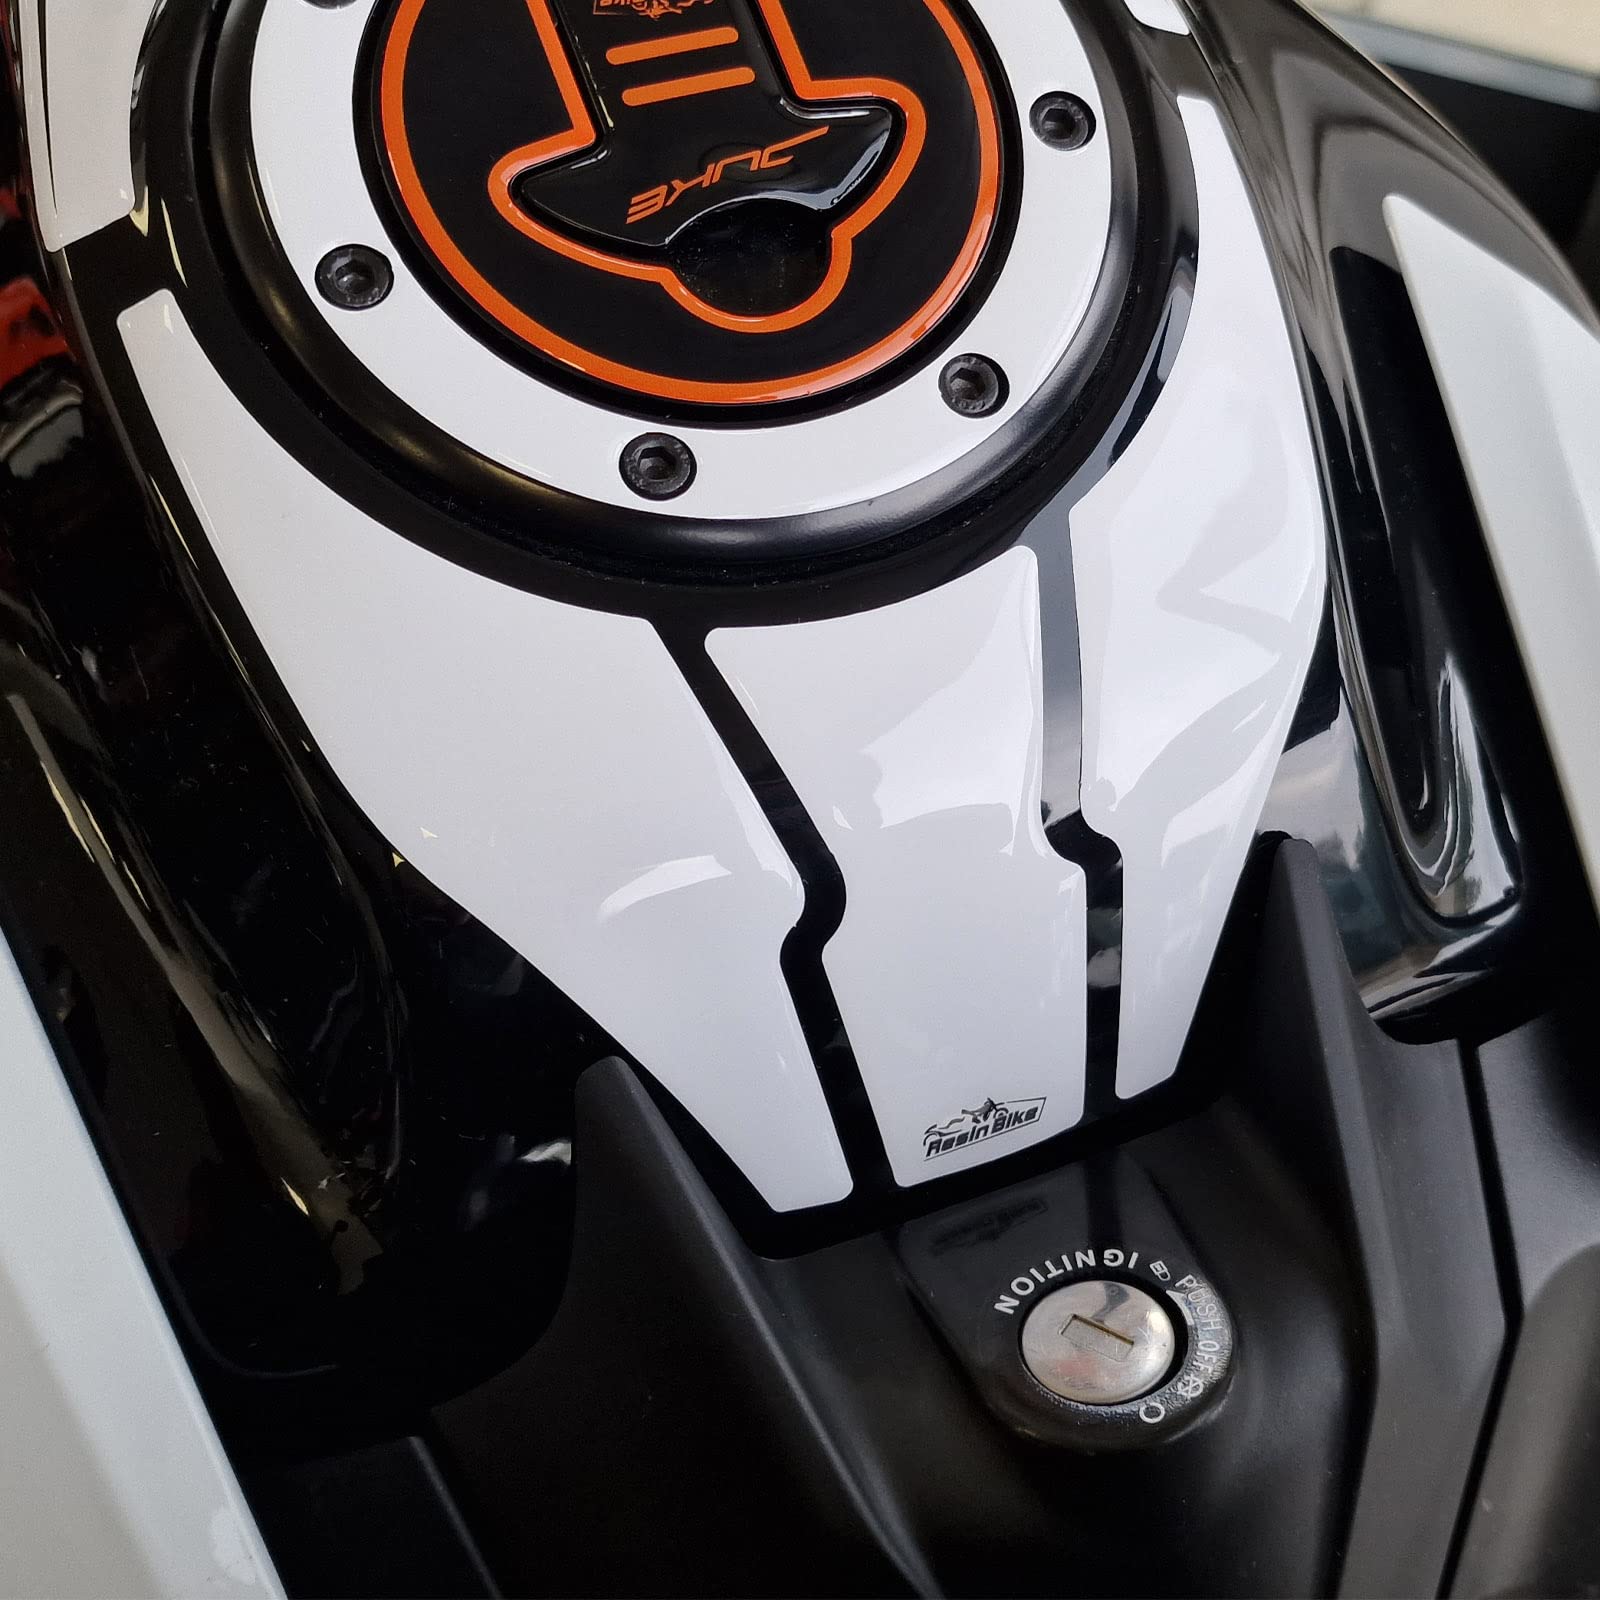 Resin Bike Aufkleber für Motorrad Kompatibel mit KTM Duke 390 200 2021-2022. Schlüsselschutz vor Stößen und Kratzern. 3D-Harzklebstoff - Stickers - Made in Italy von Resin Bike